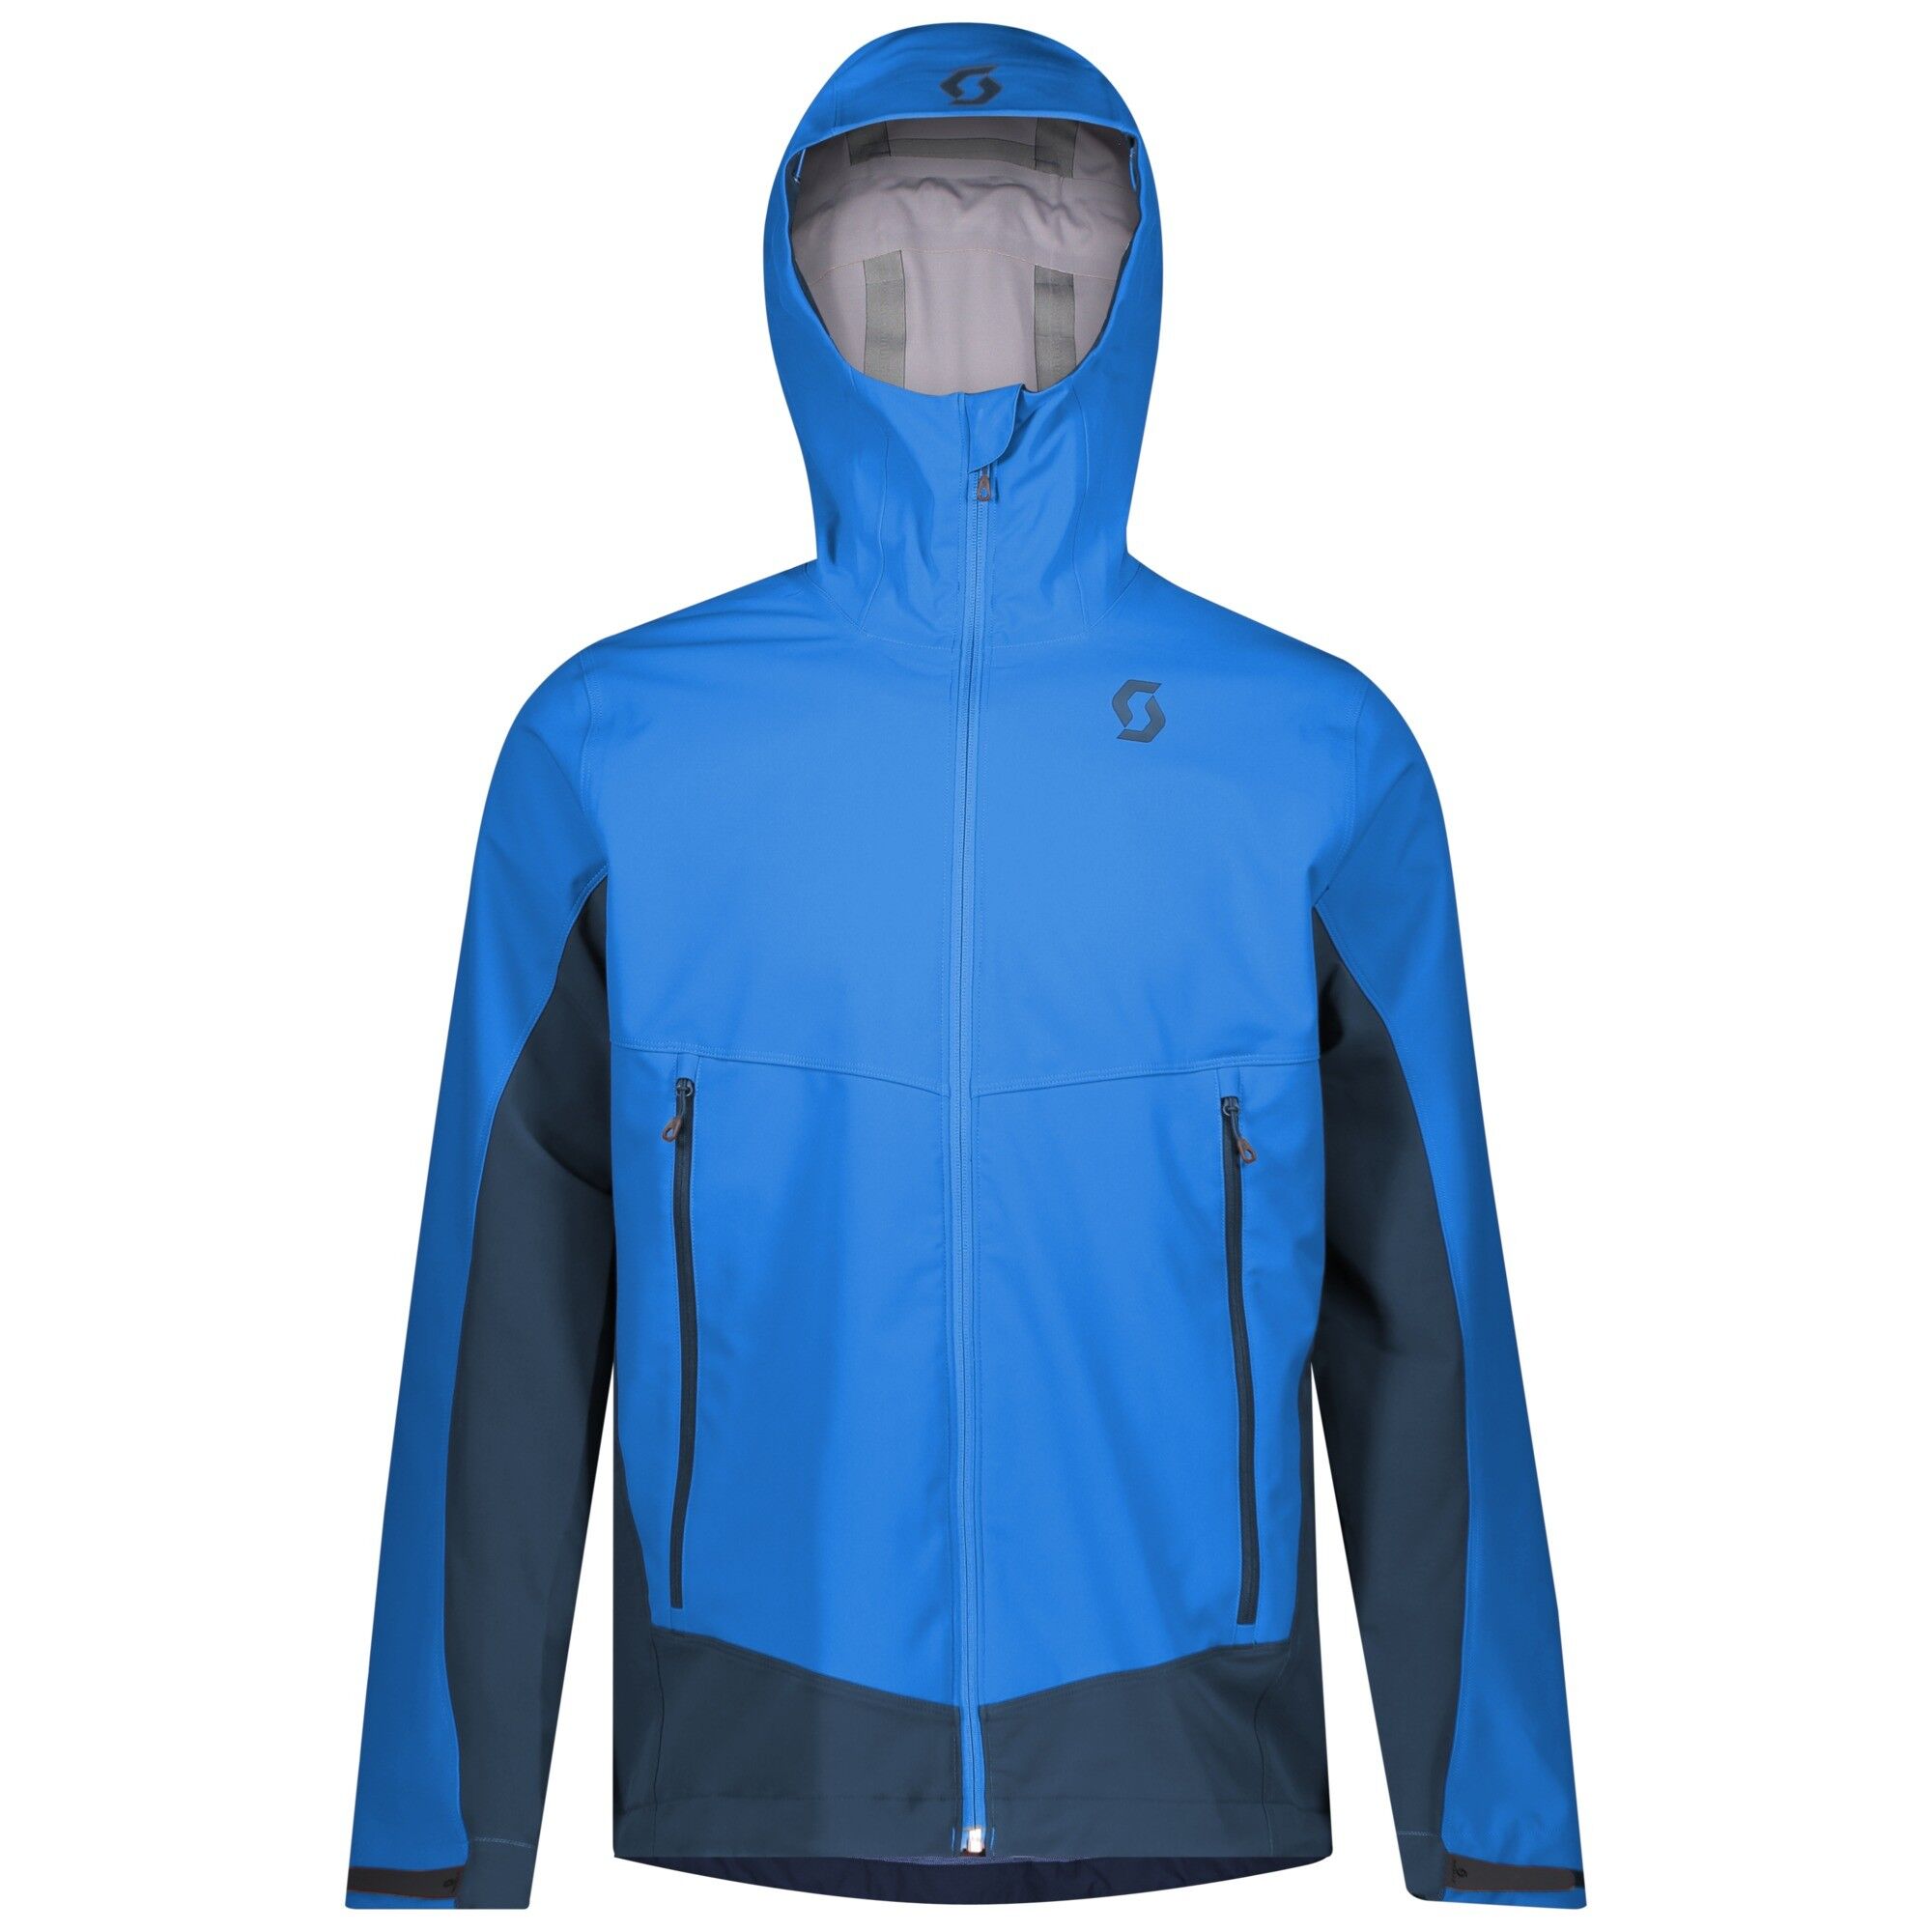 Scott Explorair Ascent WS Jacket - Softshell jacket - Men's